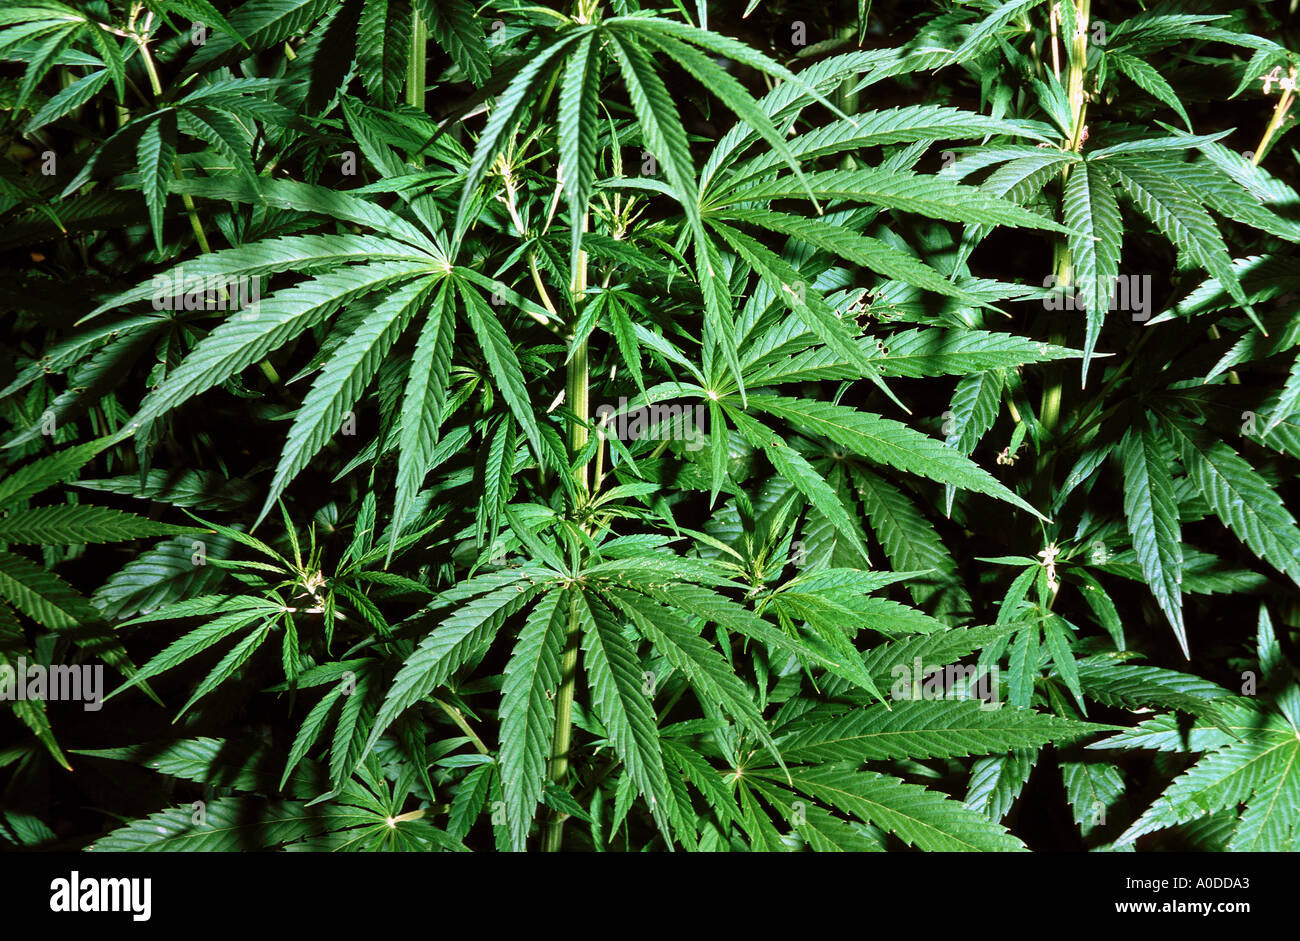 Impianto di Marijuana di piante di cannabis sativa foglie verdi di canapa droghe stupefacenti vietati Foto Stock